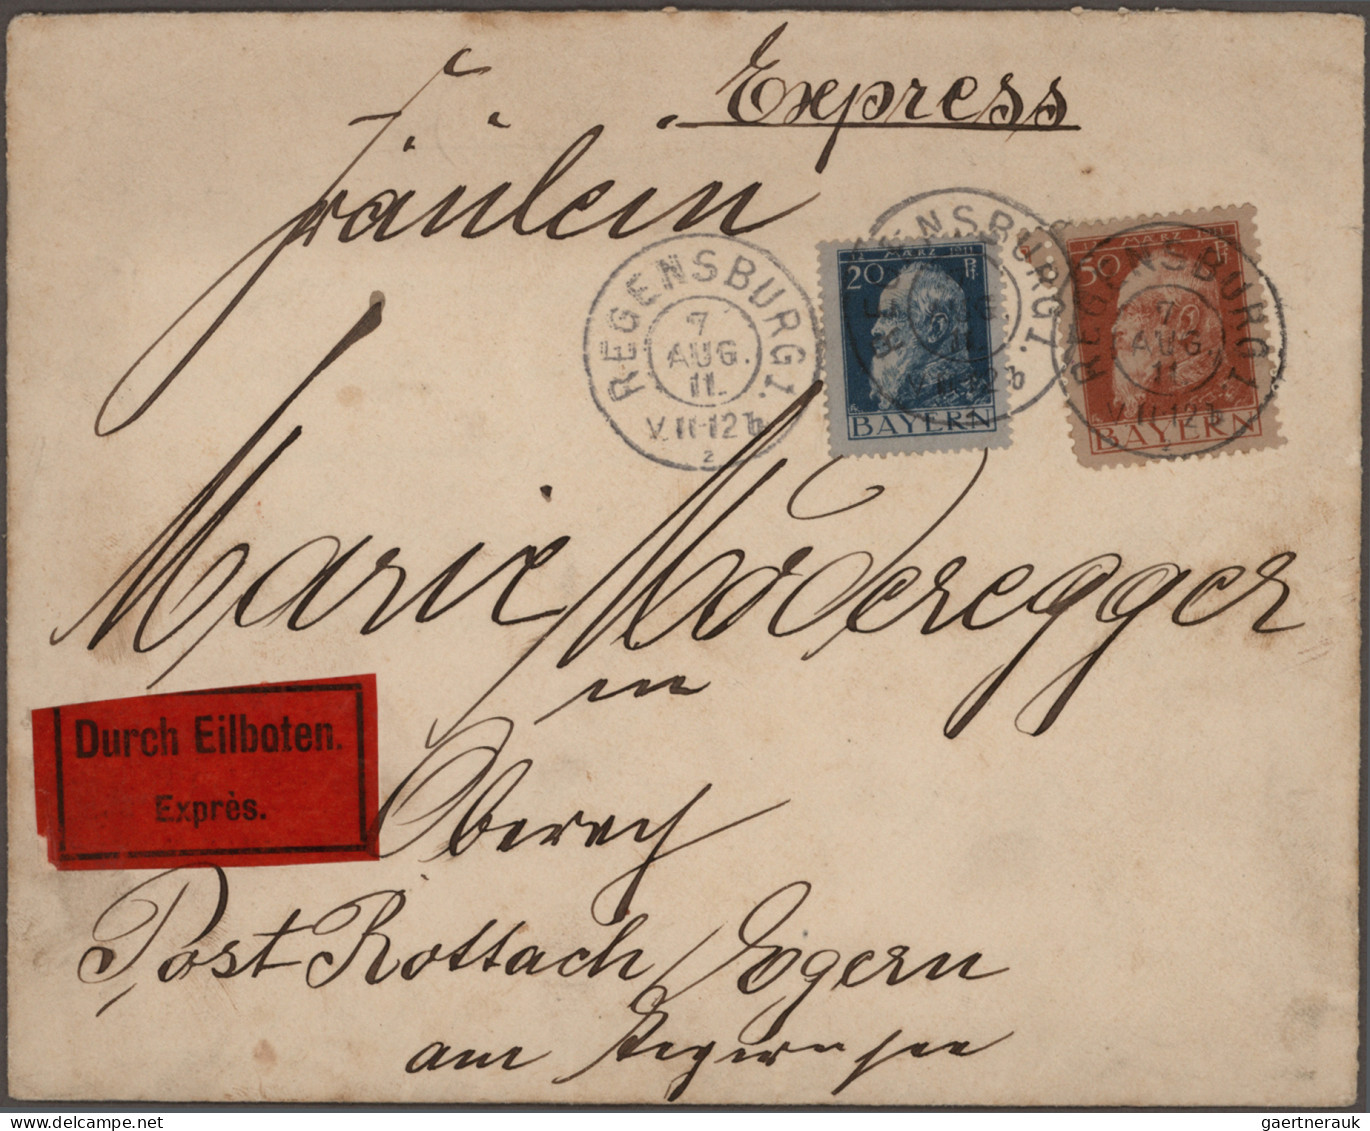 Bayern - Marken und Briefe: 1867/1920, fast nur Pfennig-Zeit, vielseitige Partie